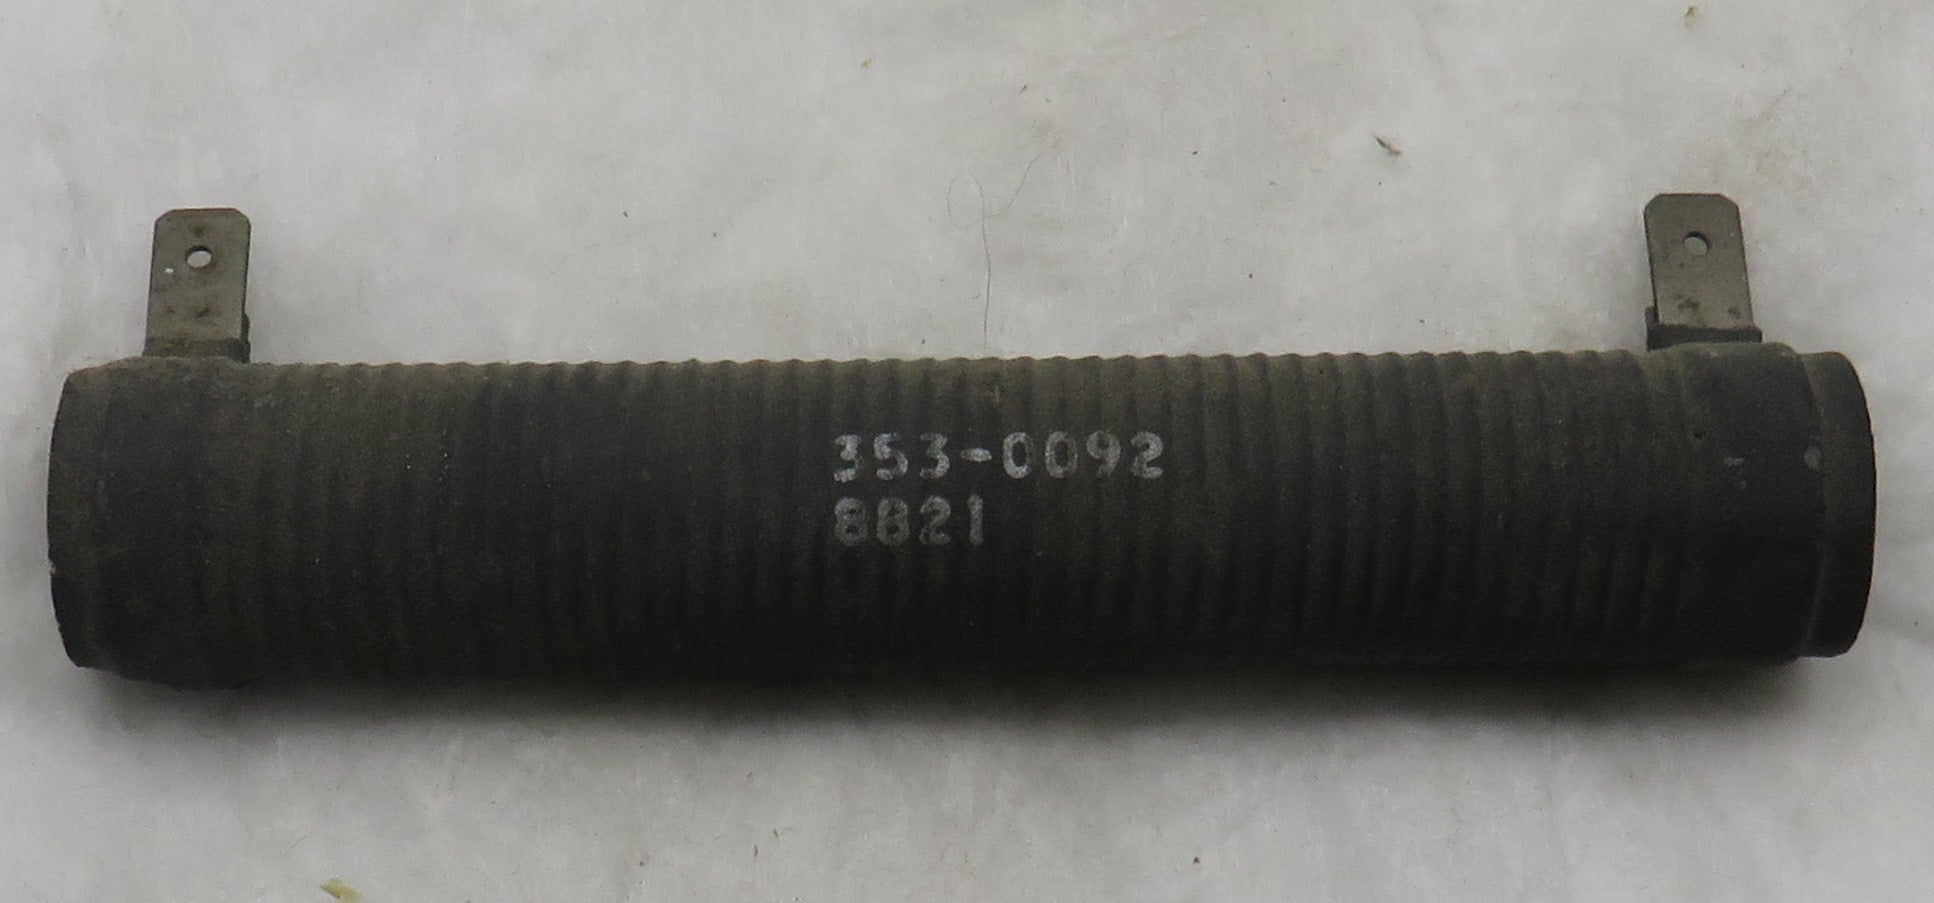 353-0092 Onan Fixed-Resistor 50W Also, same as 353-0068 